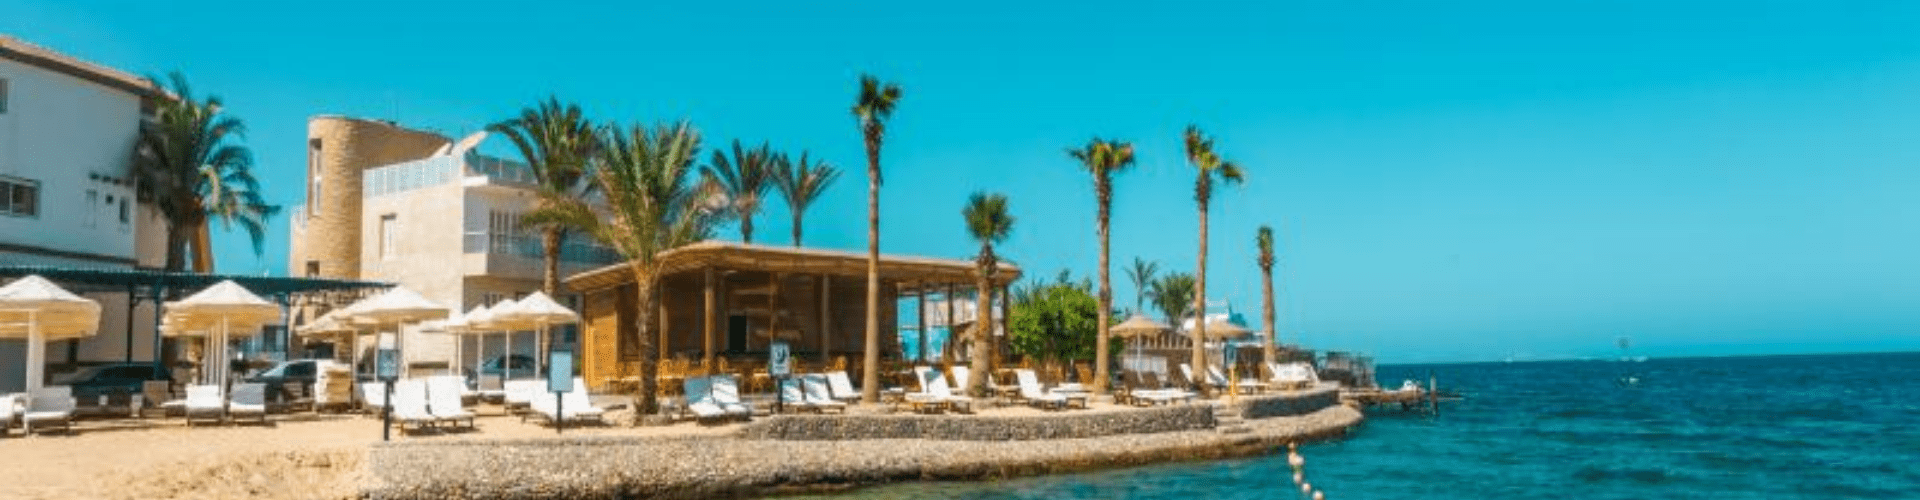 La Rosa Waves Resort - Hurgada, Egipat - Najpovoljnije letovanje avionom - Aqua Travel.rs